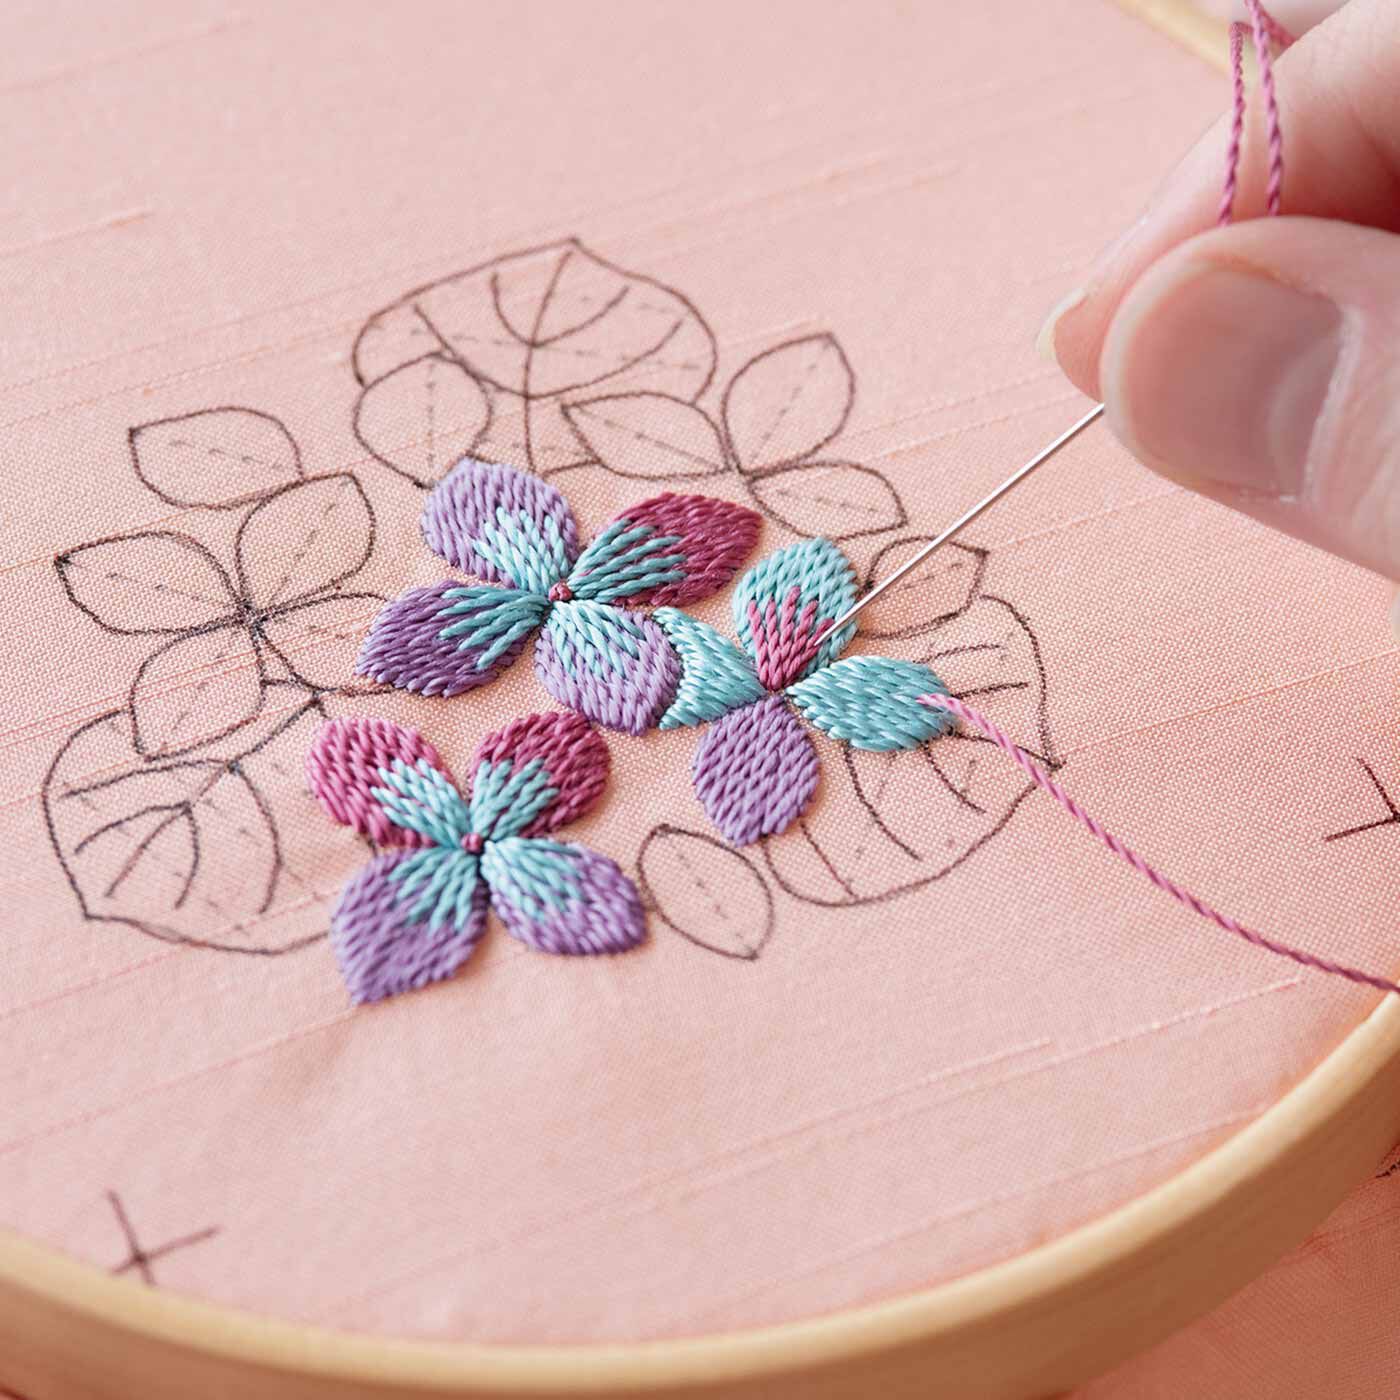 Couturier|日本刺しゅうにあこがれて　絹糸の優美な輝き文様フレームの会|ふっくらと浮かびあがる絹糸の光沢は、日本刺しゅうならでは。